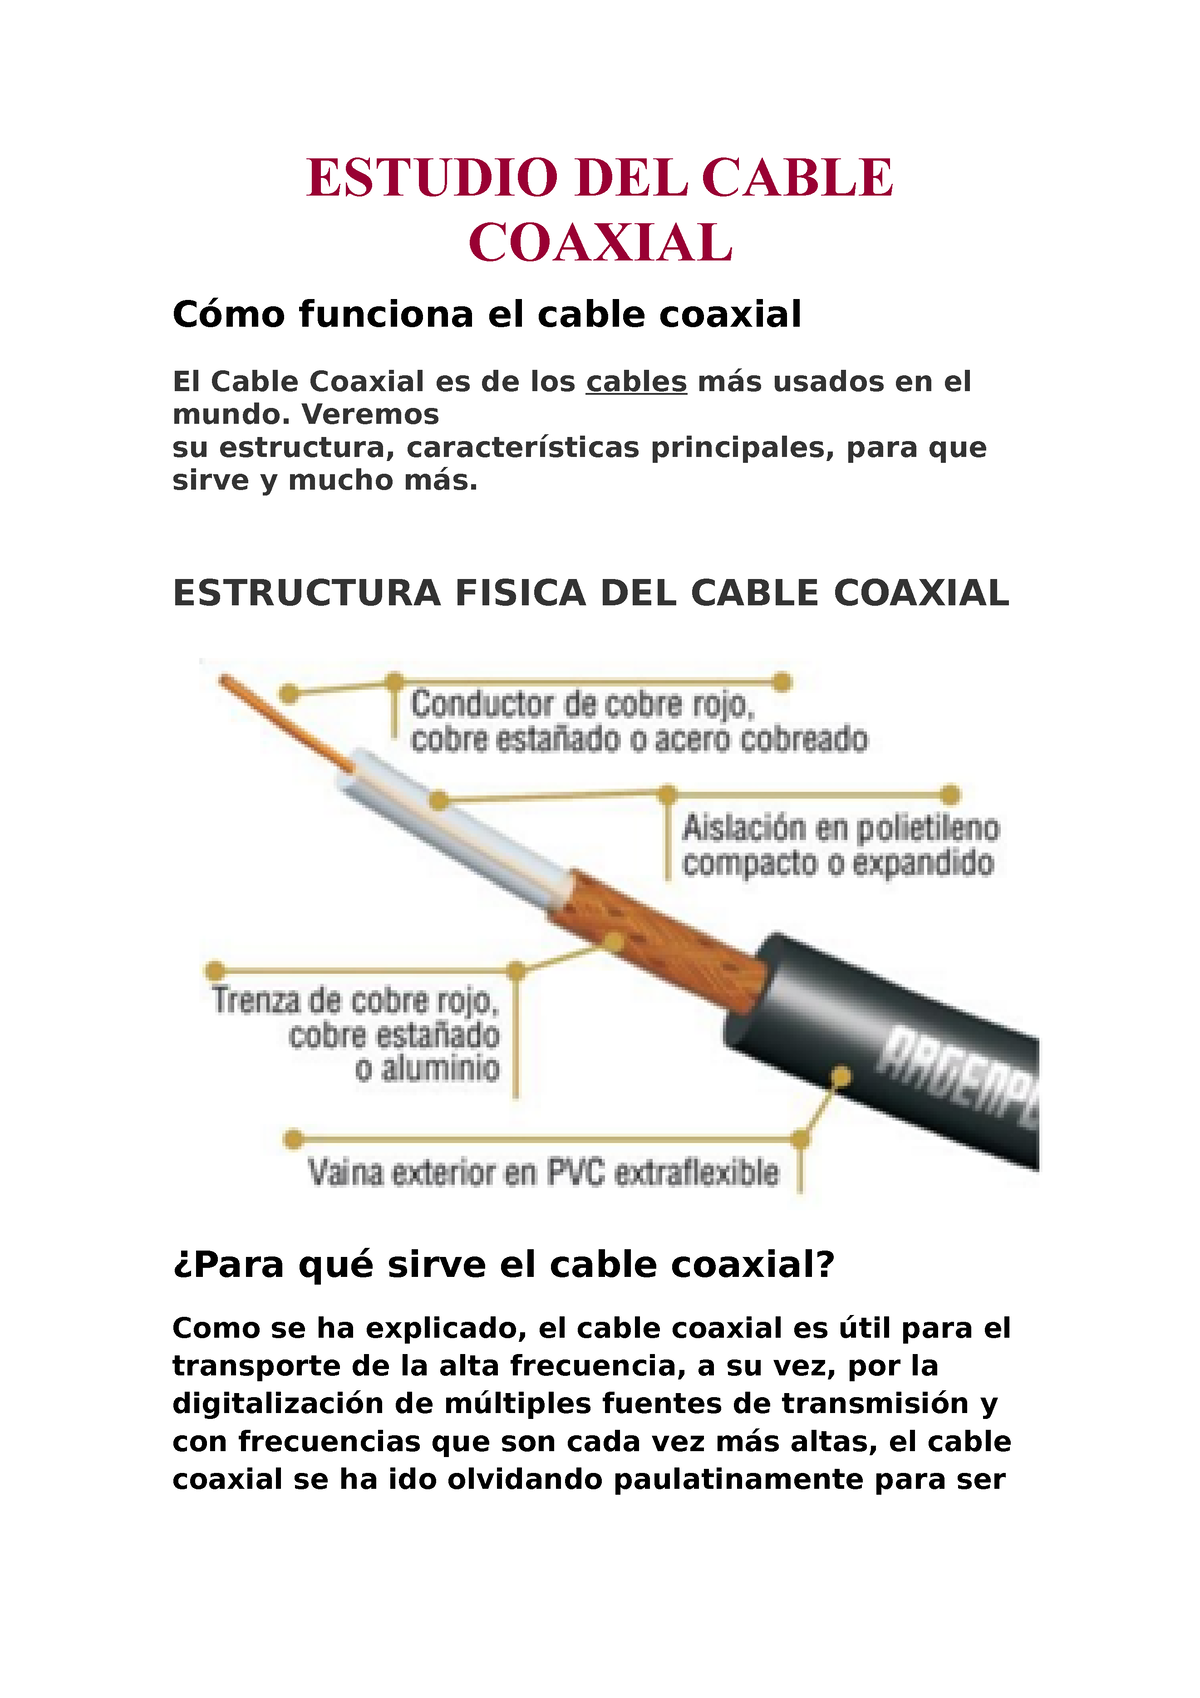 Descubre los tipos y características de los cables coaxiales